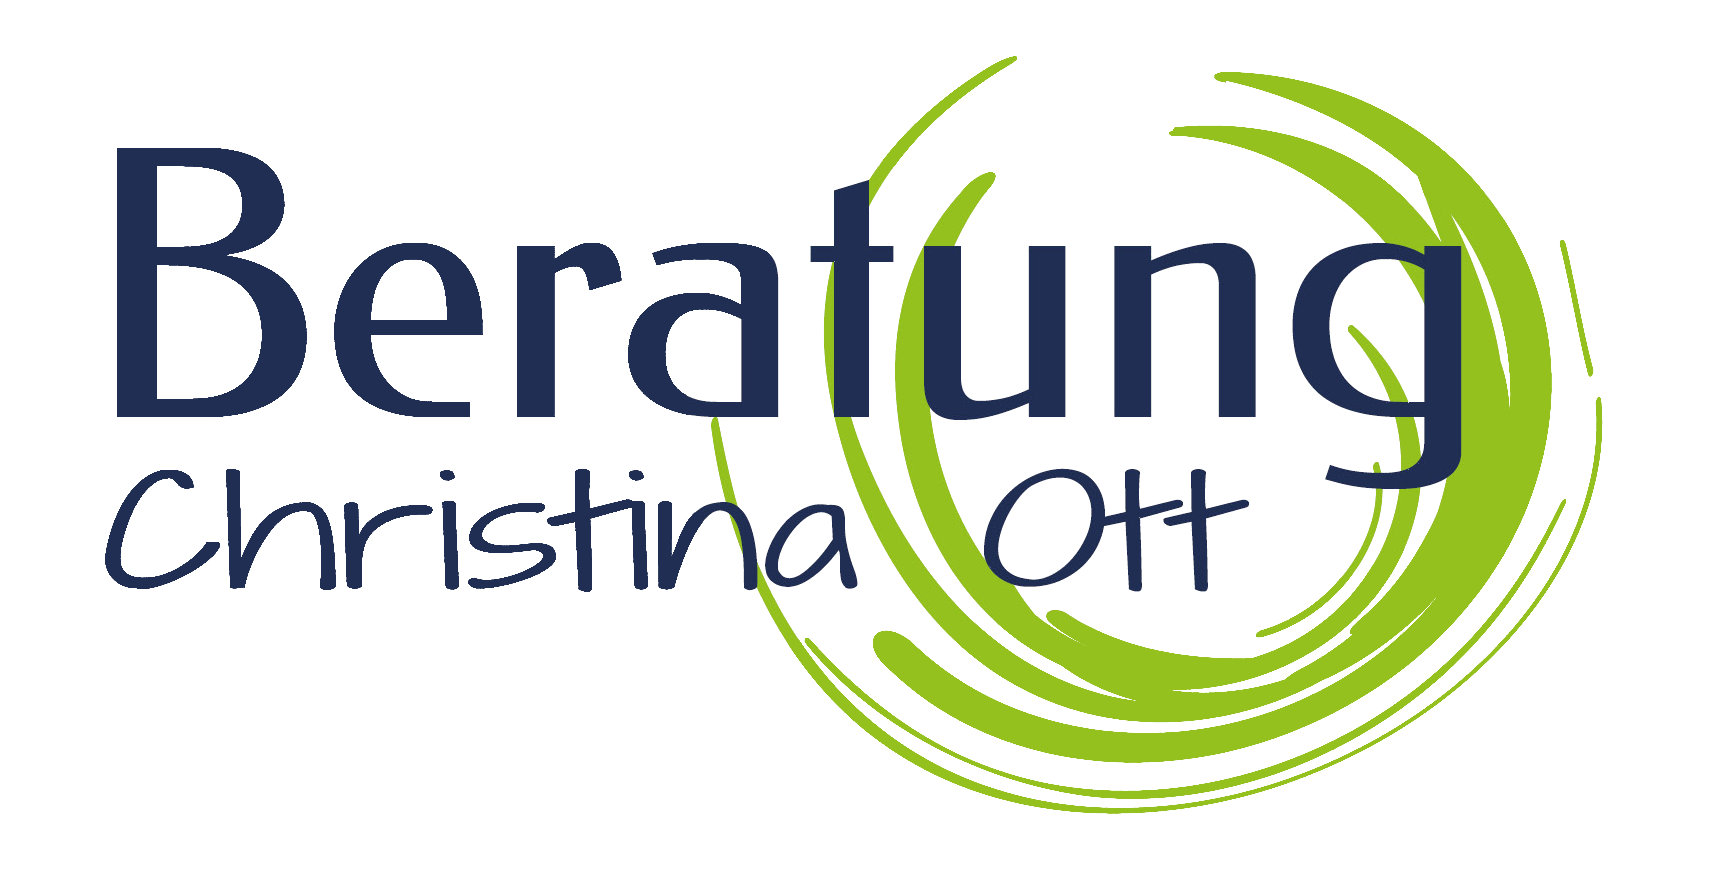 Lebensberatung Christina Ott logo